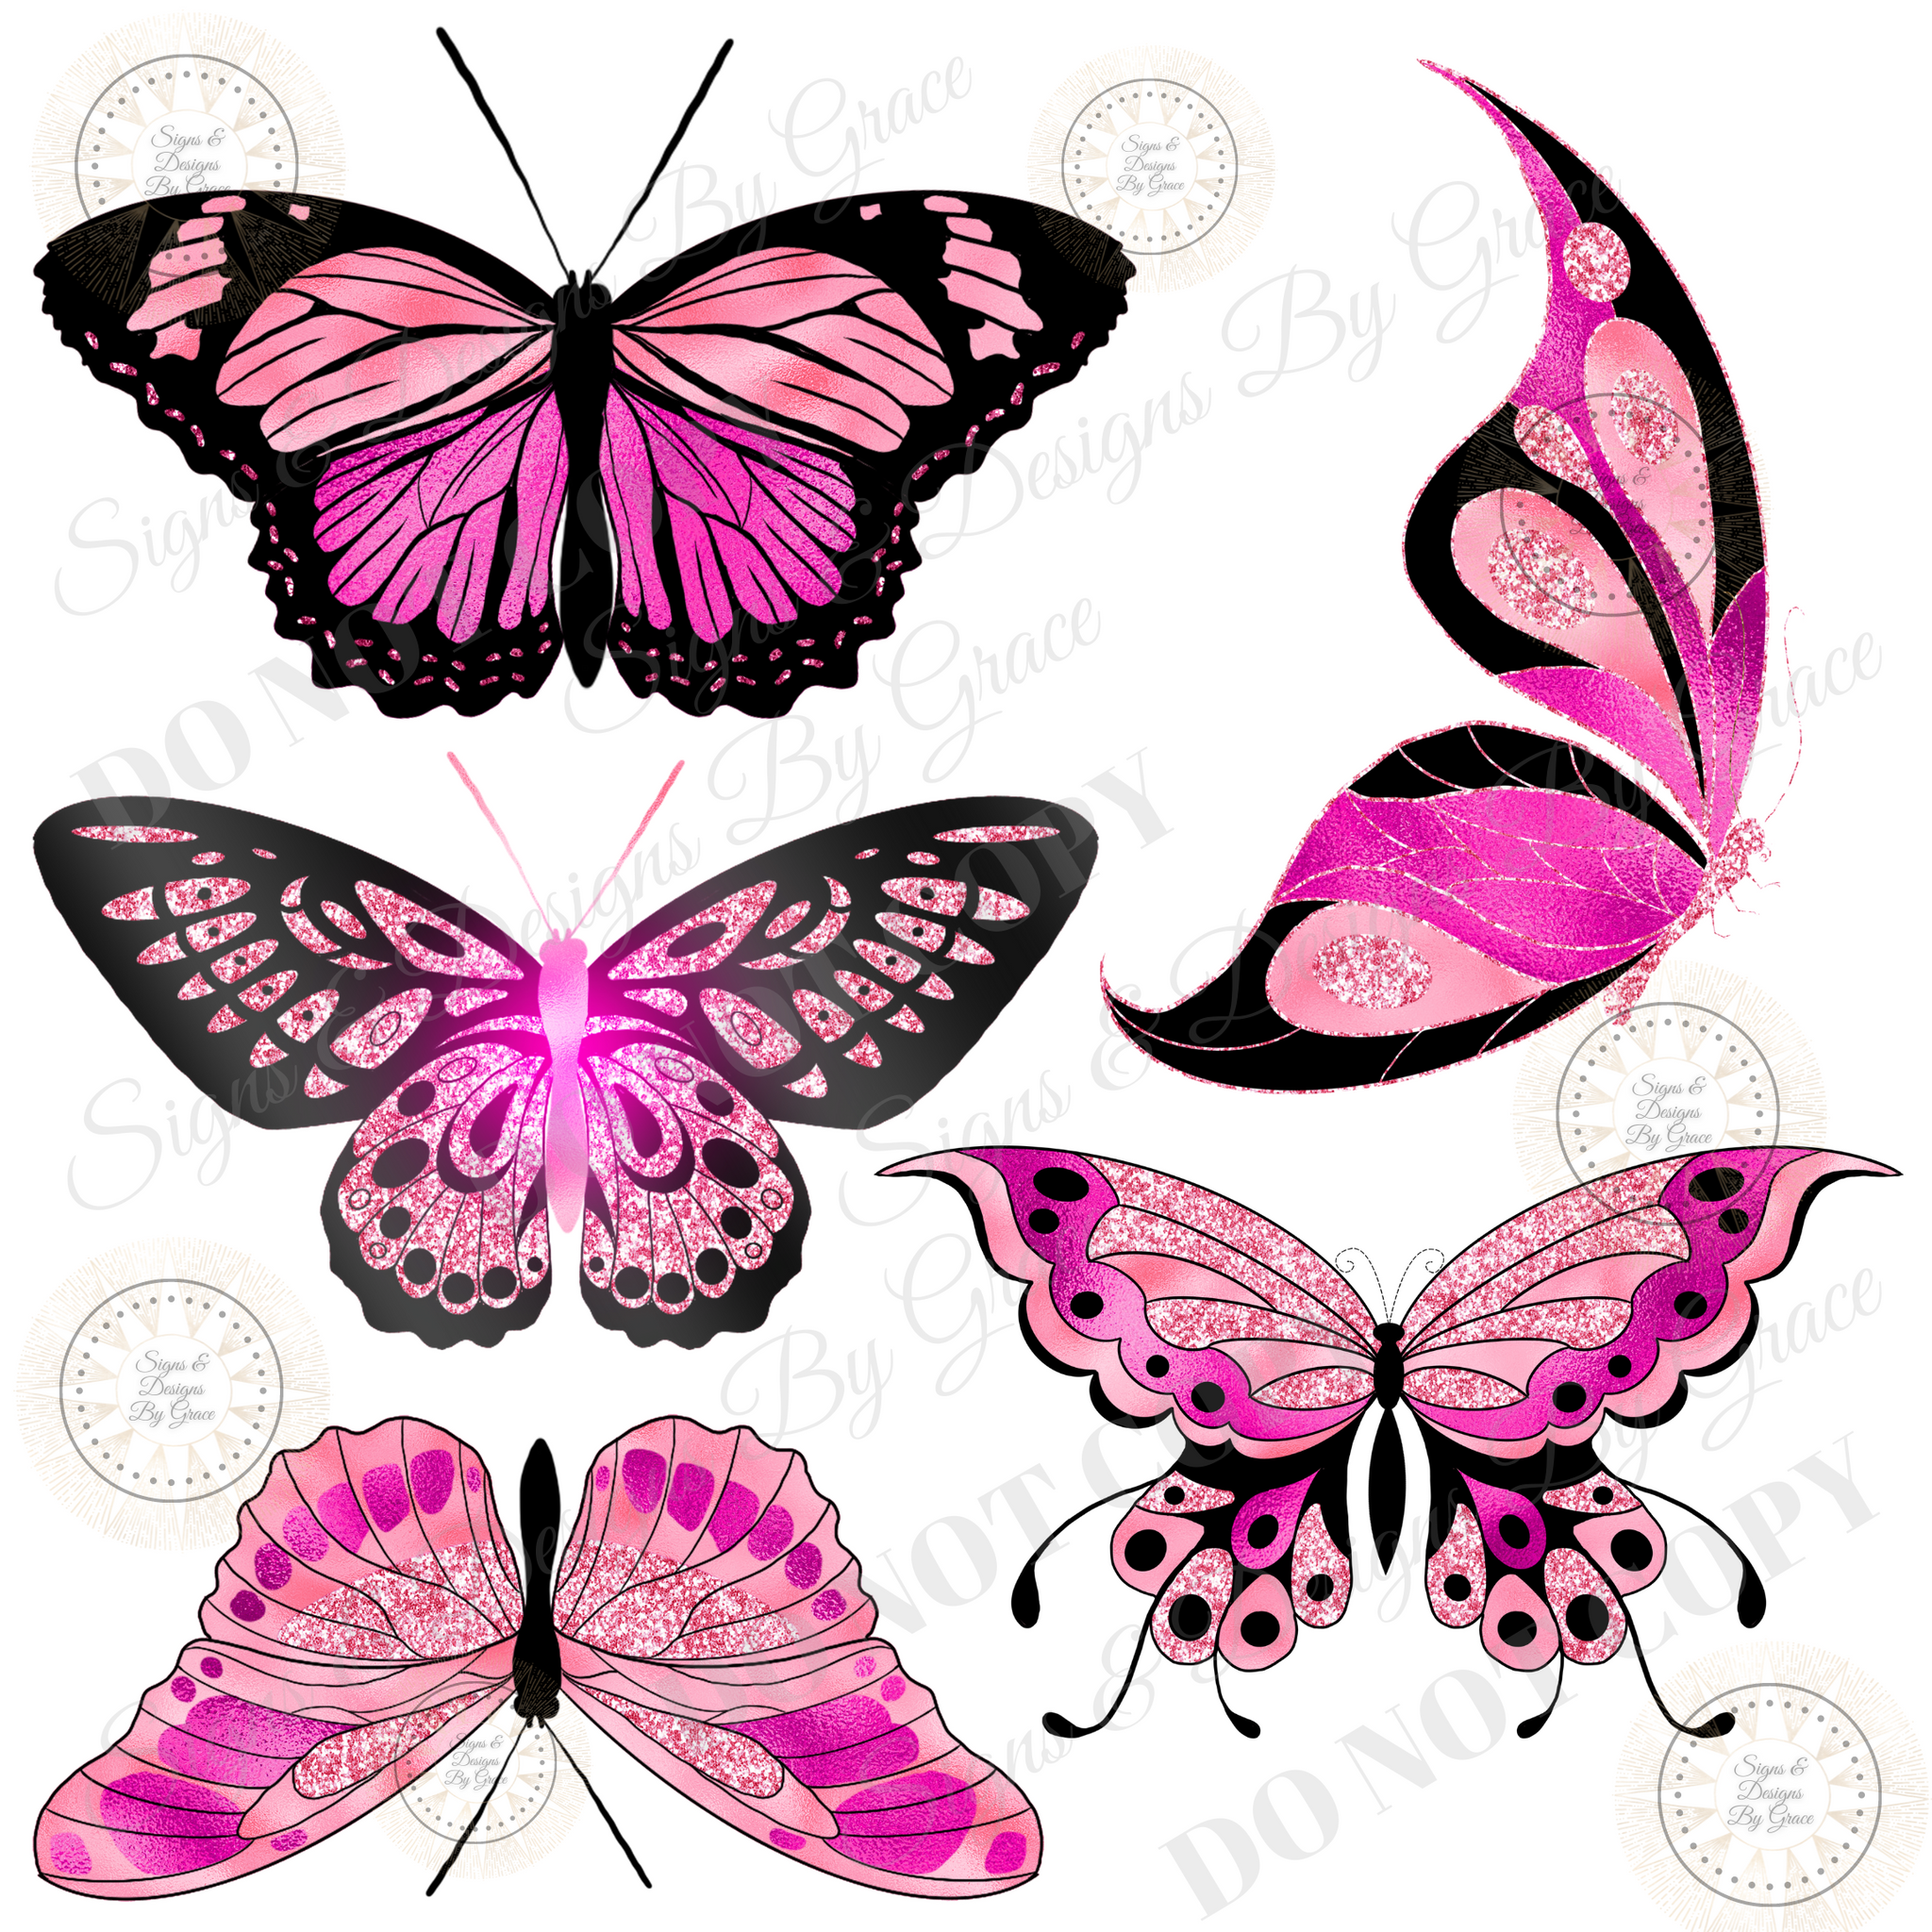 Pink Black butterflies